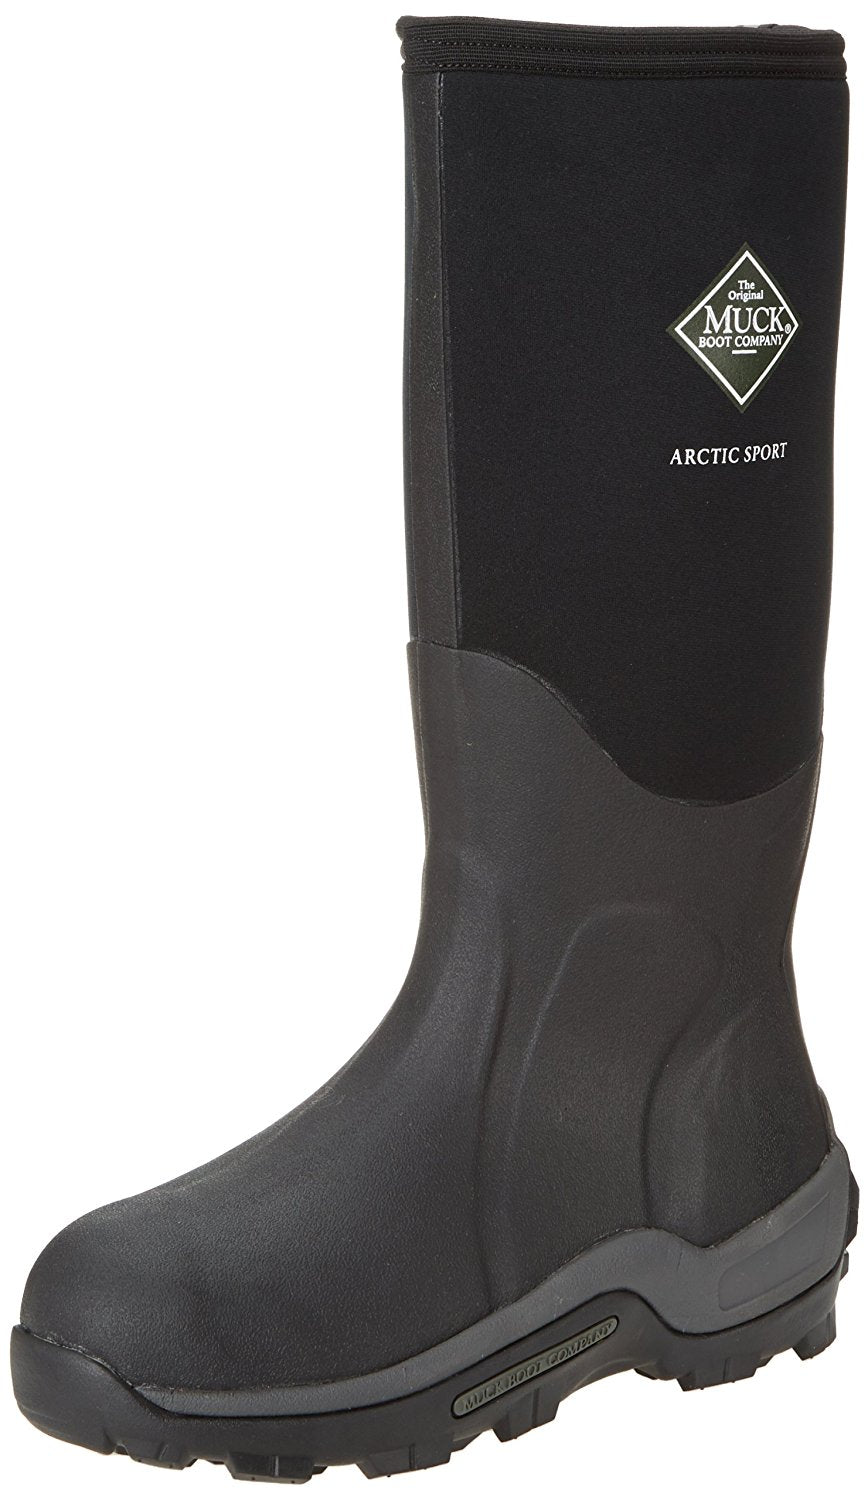 The Original Muck Boot ASP000A-13 Arctic Sport Men's Boots, 13, Black